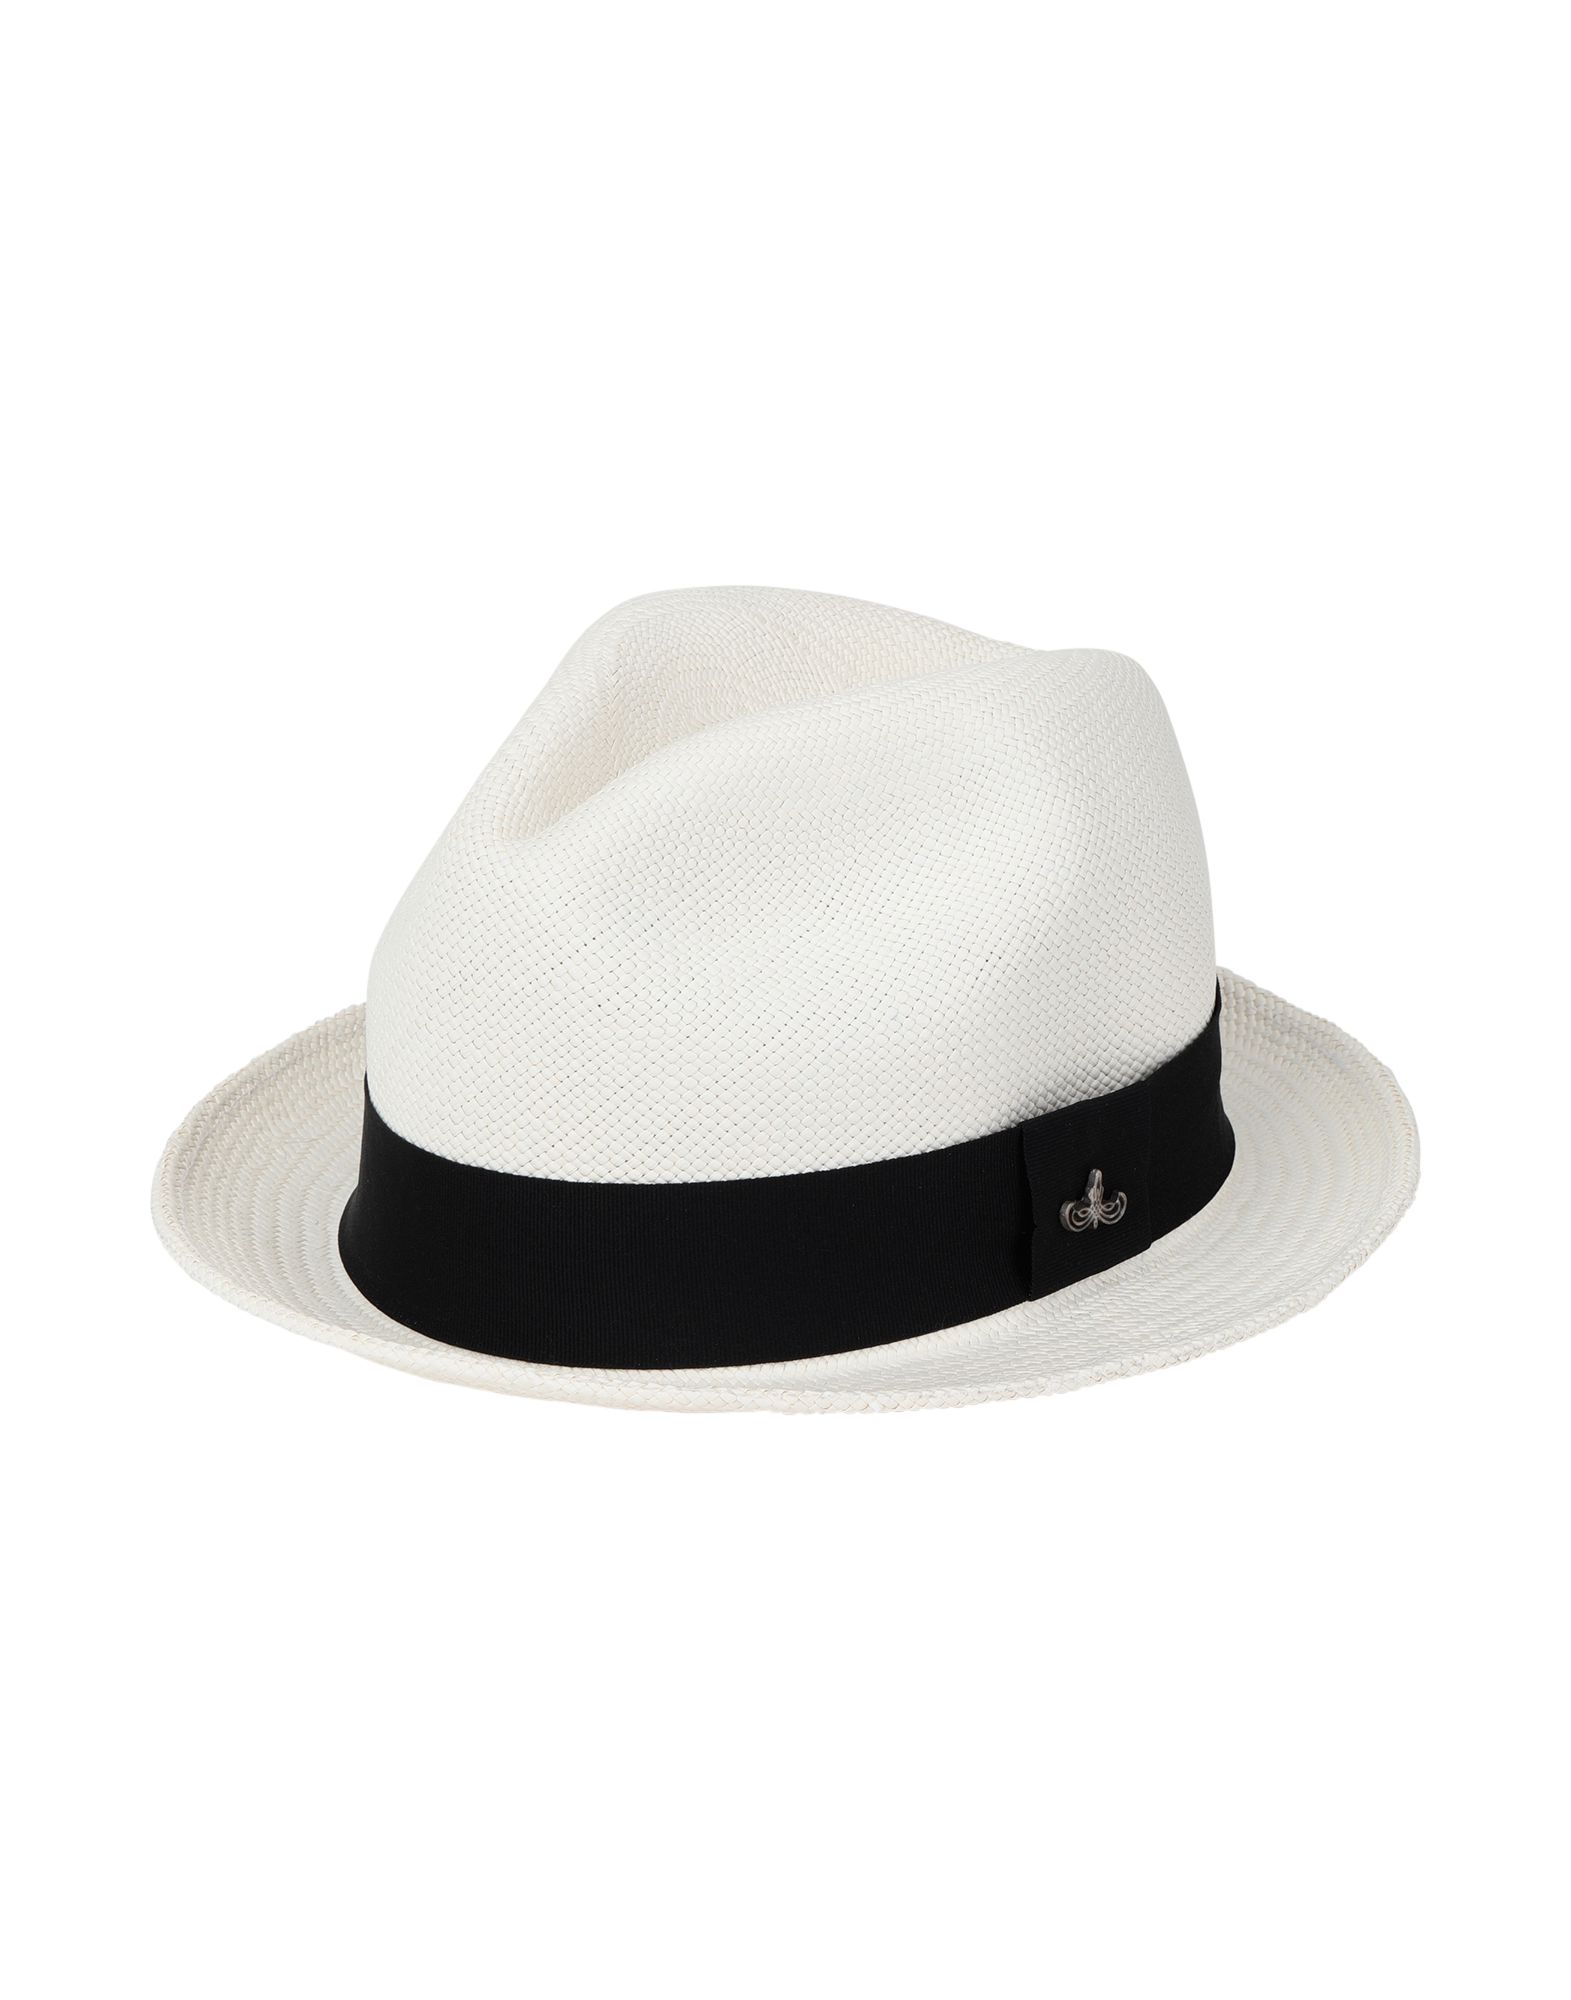 《送料無料》PANAMA HATTERS レディース 帽子 ホワイト 55 ストロー 100%